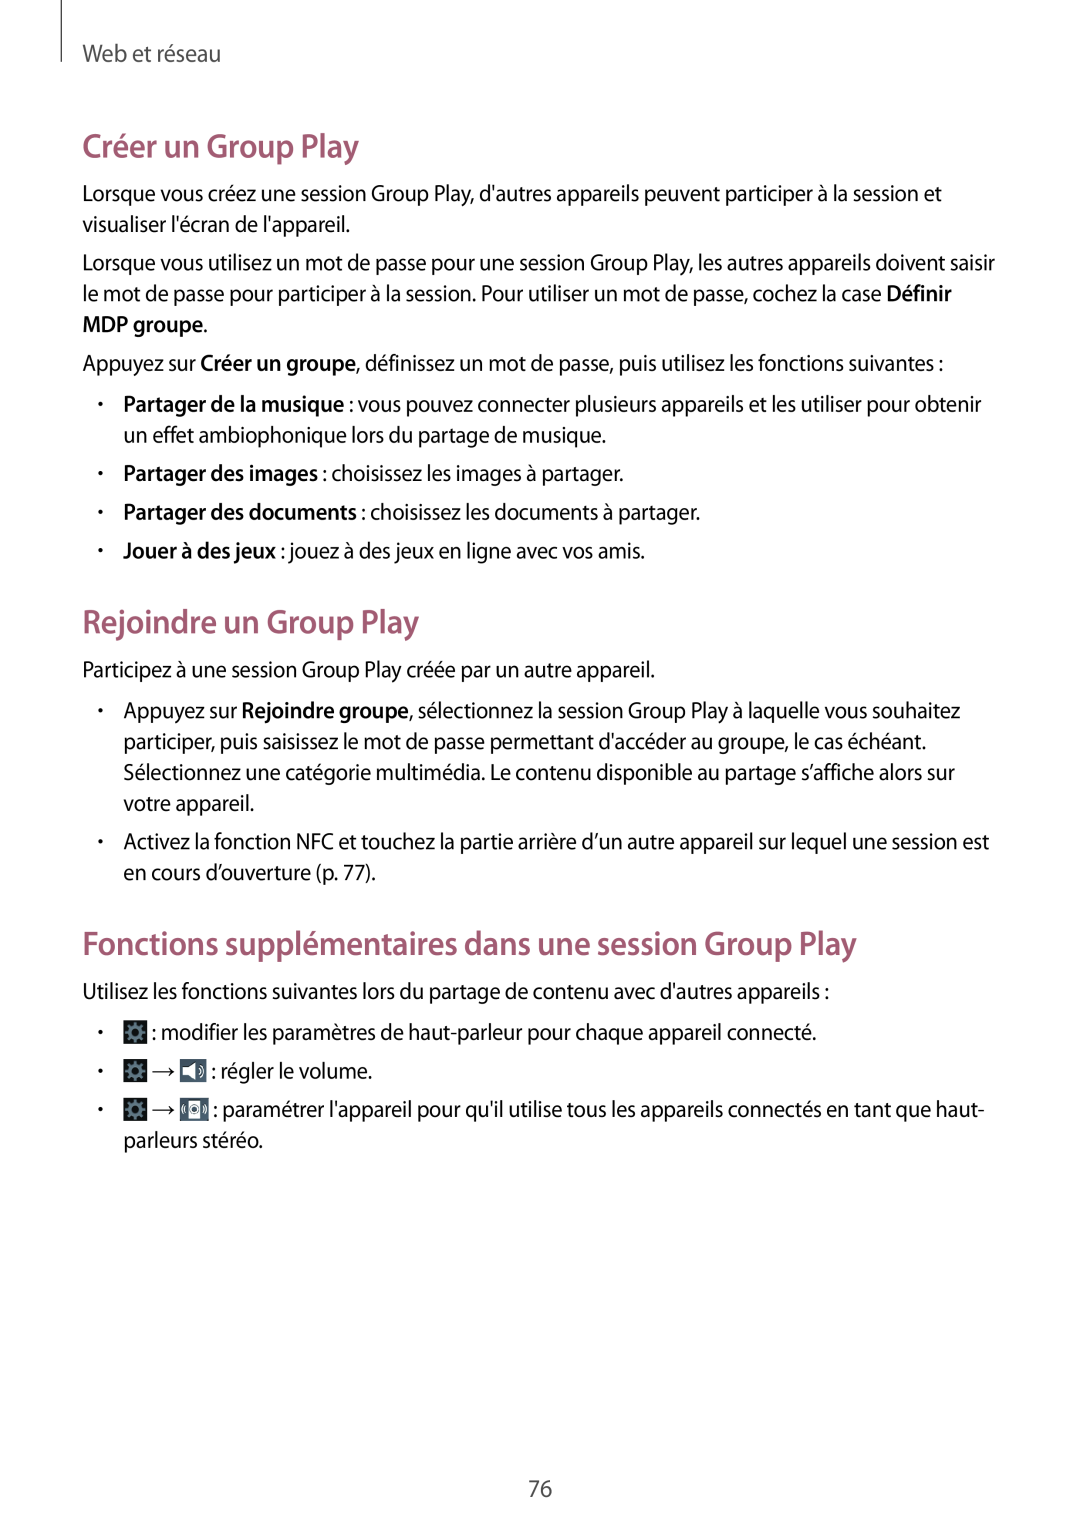 Samsung GT-N7105TADFTM Créer un Group Play, Rejoindre un Group Play, Fonctions supplémentaires dans une session Group Play 